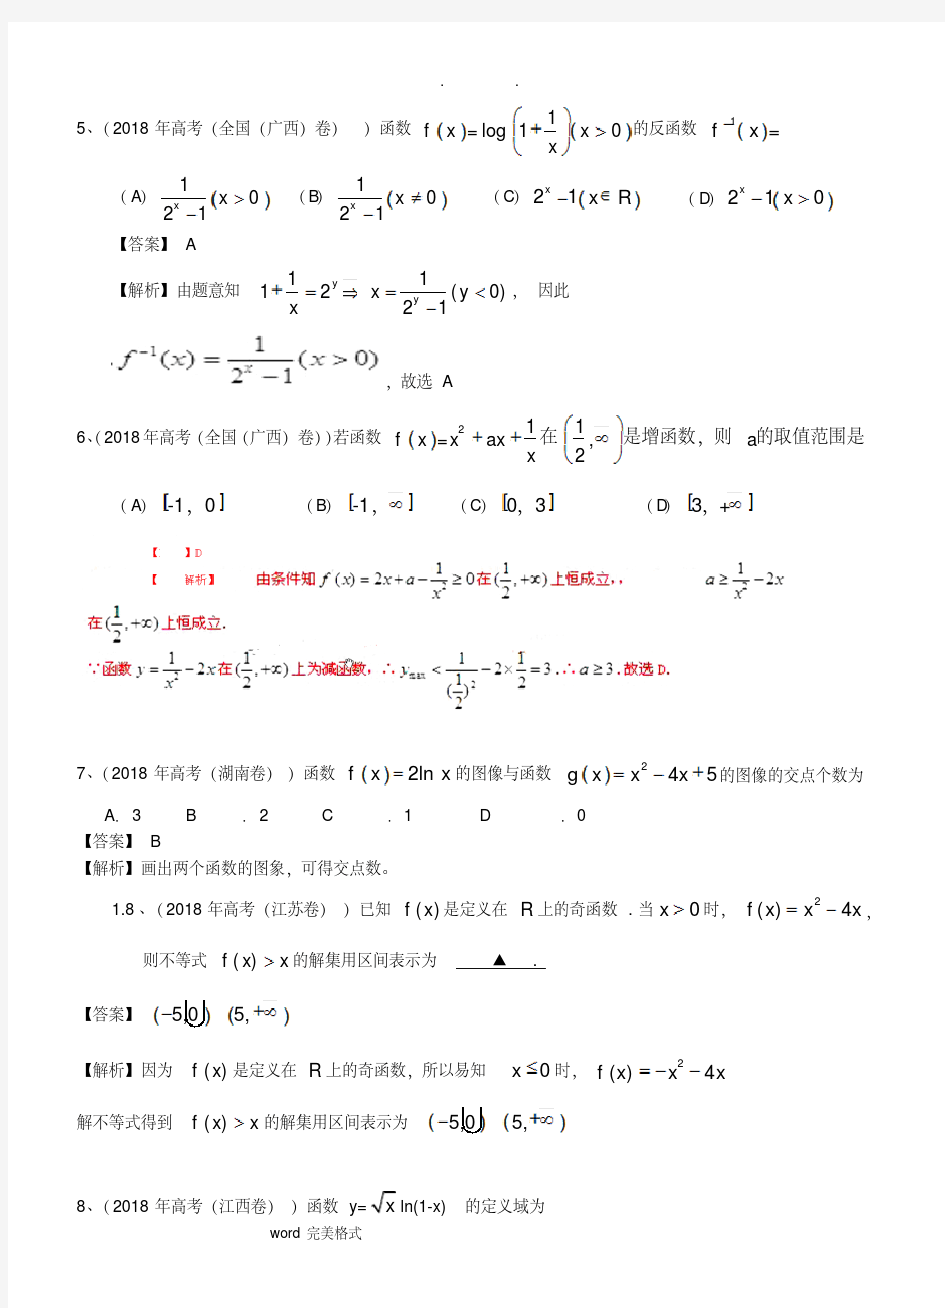 2019年高考真题理科数学分类汇编(解析版)-函数和答案